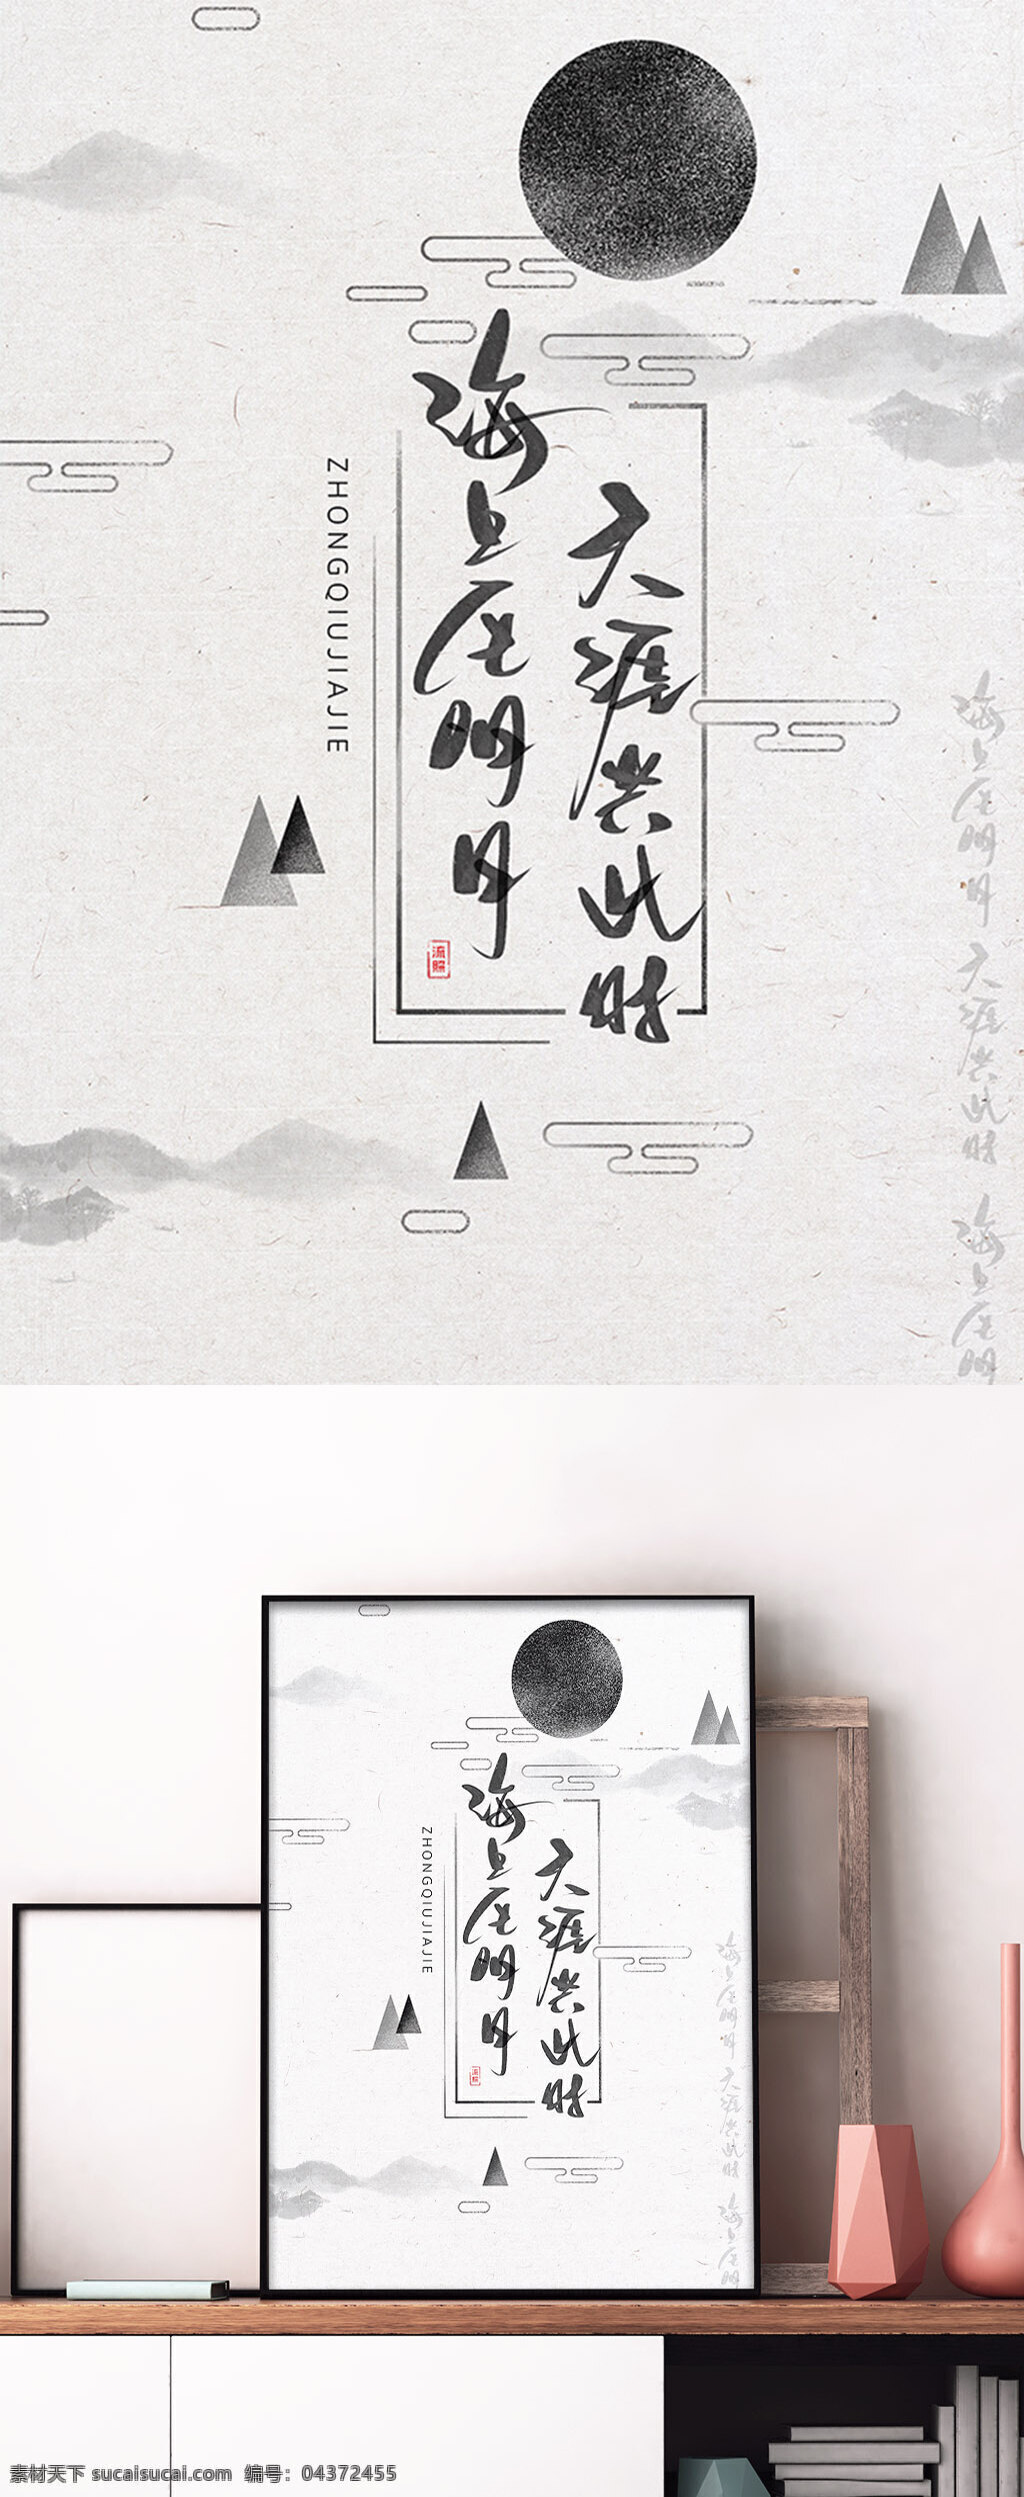 中秋节 手写 字体 中国 风 海报 节日 传统 中国风 水墨 书法 行书 复古 古风 原创